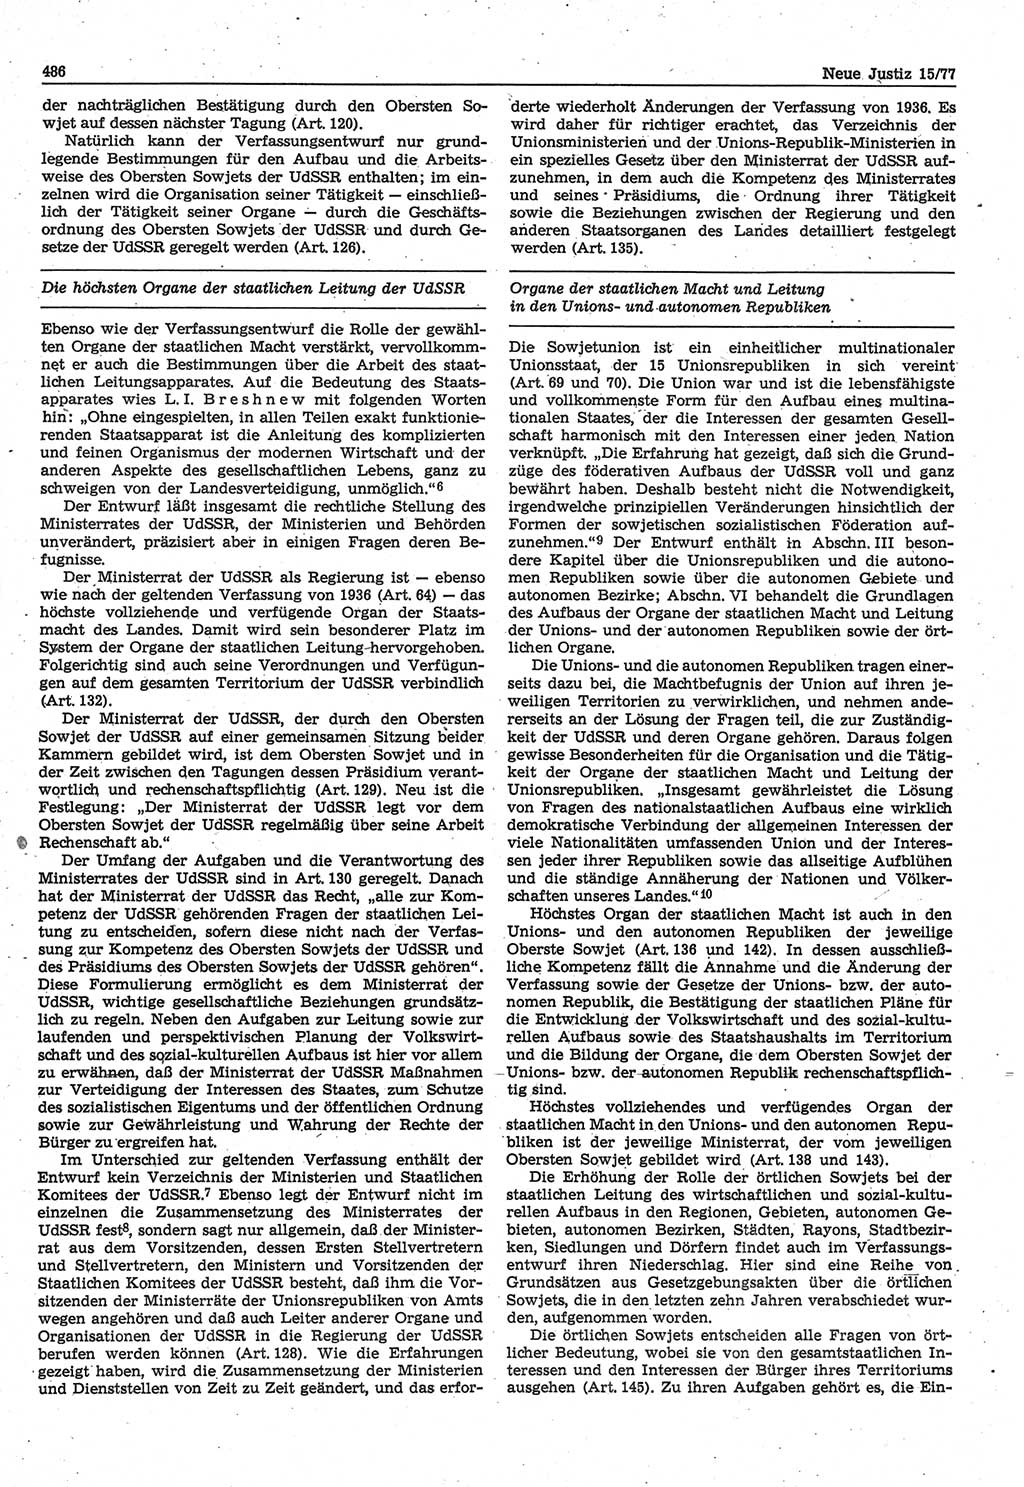 Neue Justiz (NJ), Zeitschrift für Recht und Rechtswissenschaft-Zeitschrift, sozialistisches Recht und Gesetzlichkeit, 31. Jahrgang 1977, Seite 486 (NJ DDR 1977, S. 486)